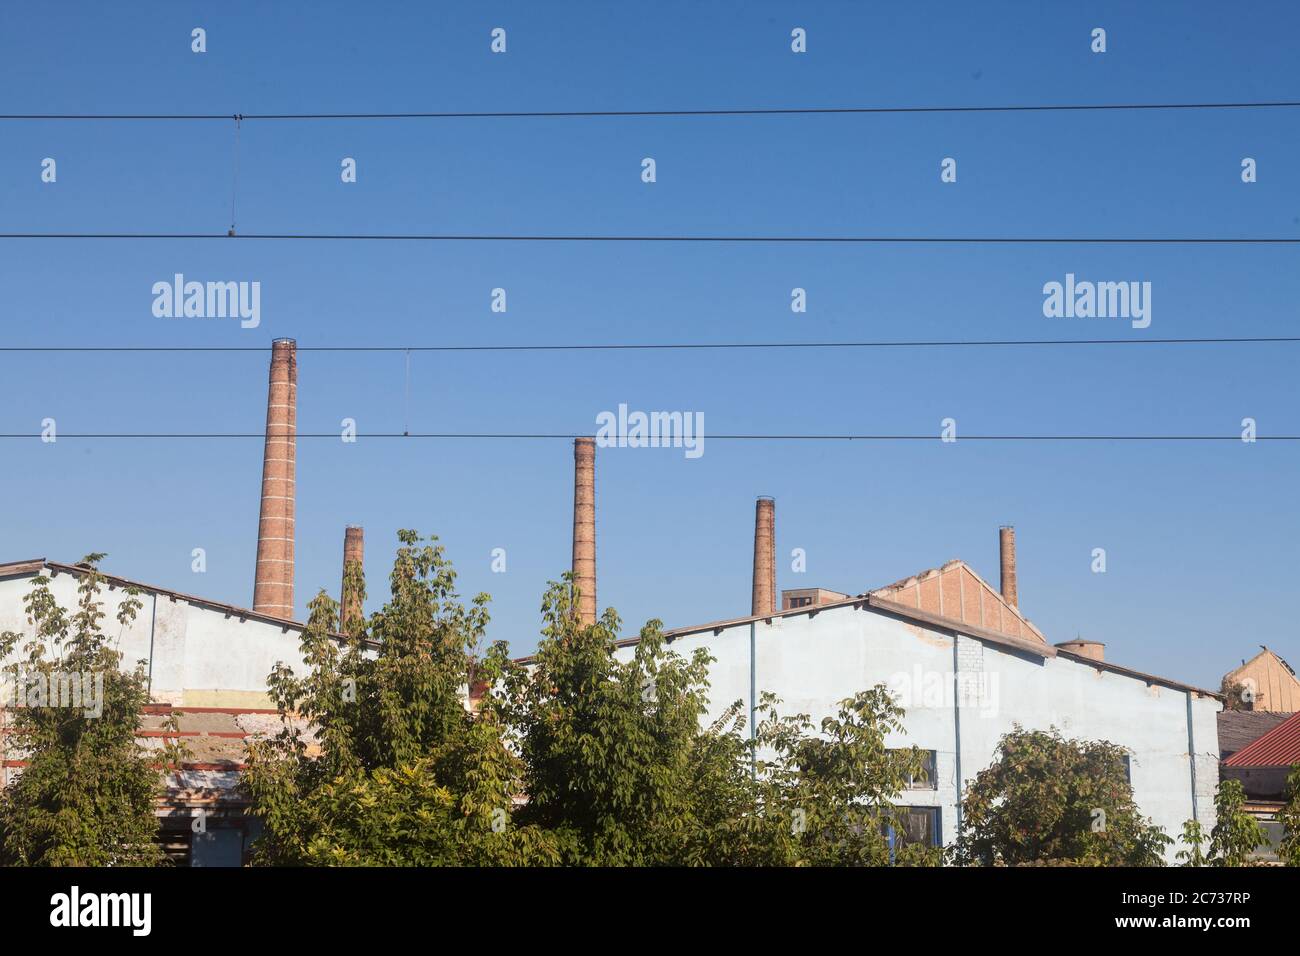 Panorama di un complesso industriale abbandonato con i suoi tipici alti camini in mattoni rossi mentre i cavi sono visibili di fronte, a Pancevo, Serbia. P Foto Stock